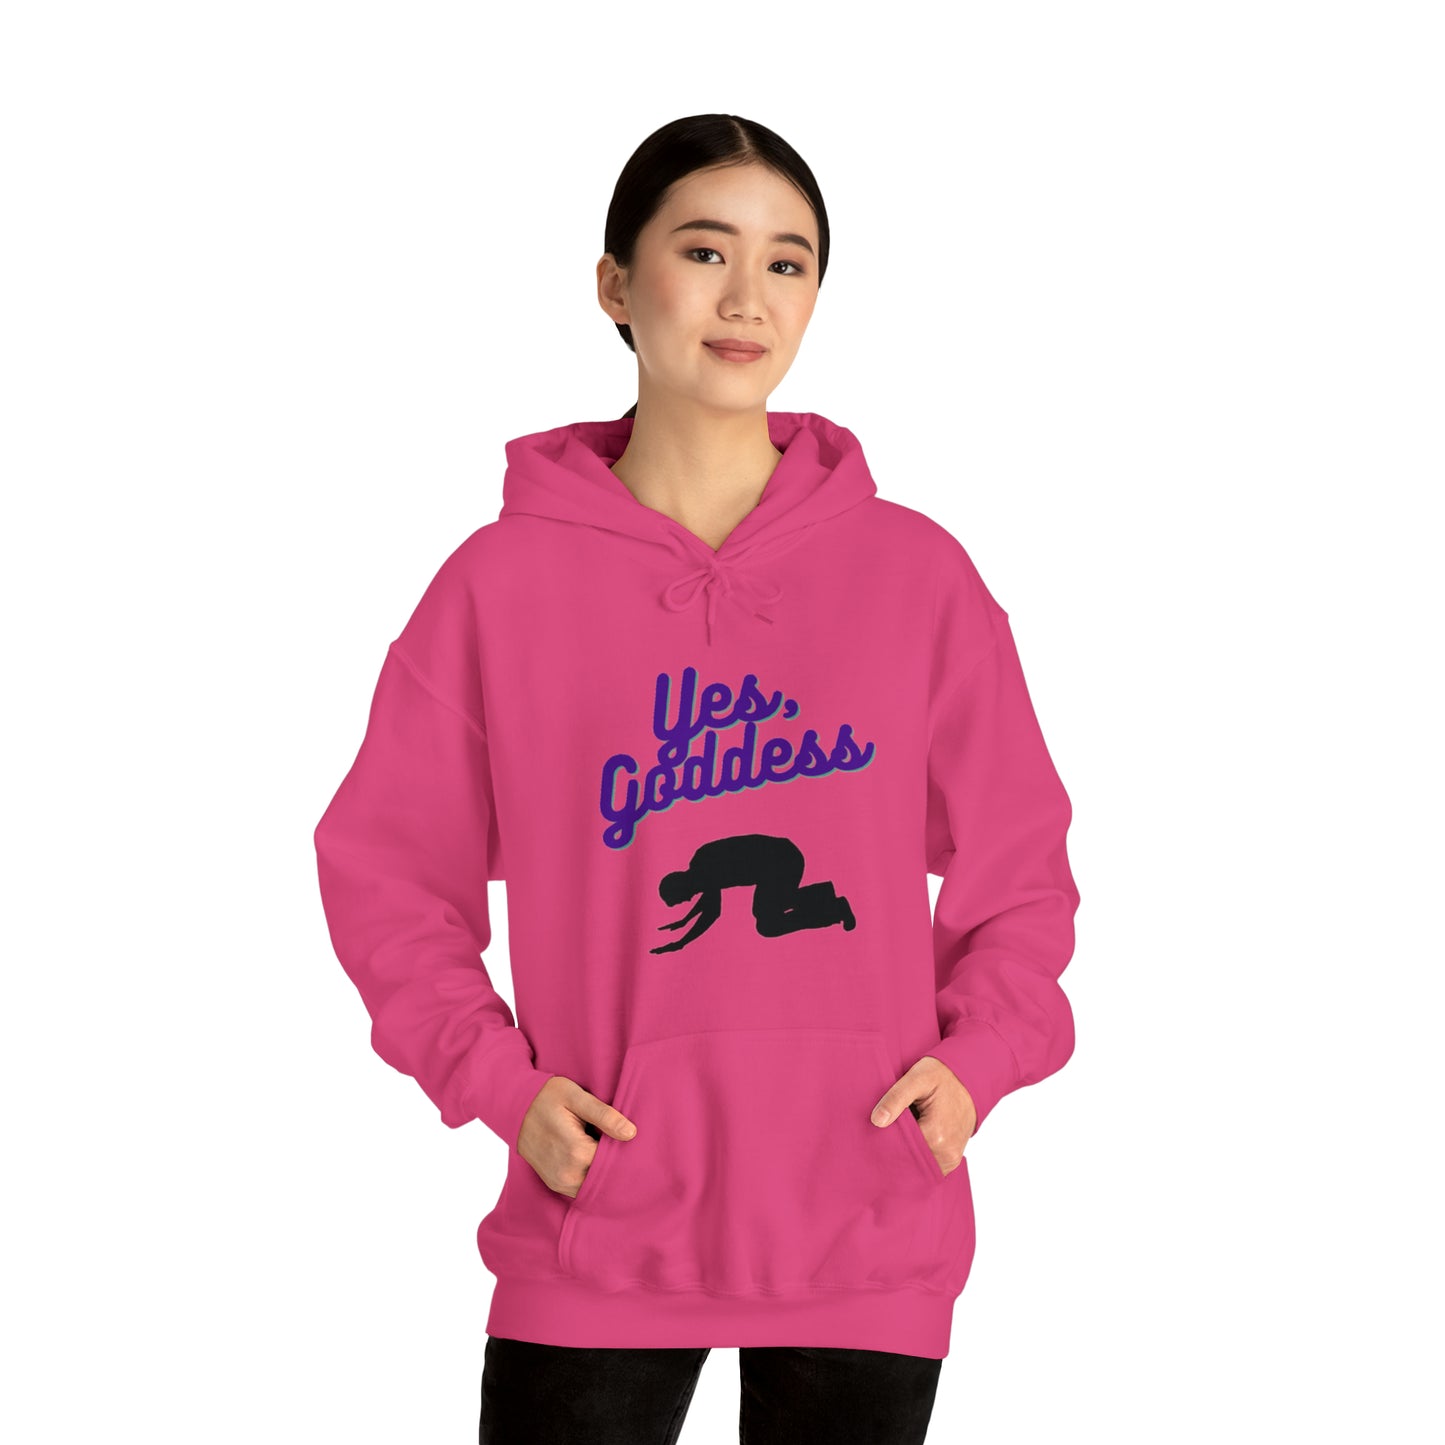 Yes, Goddess Unisex Hooded Sweatshirt